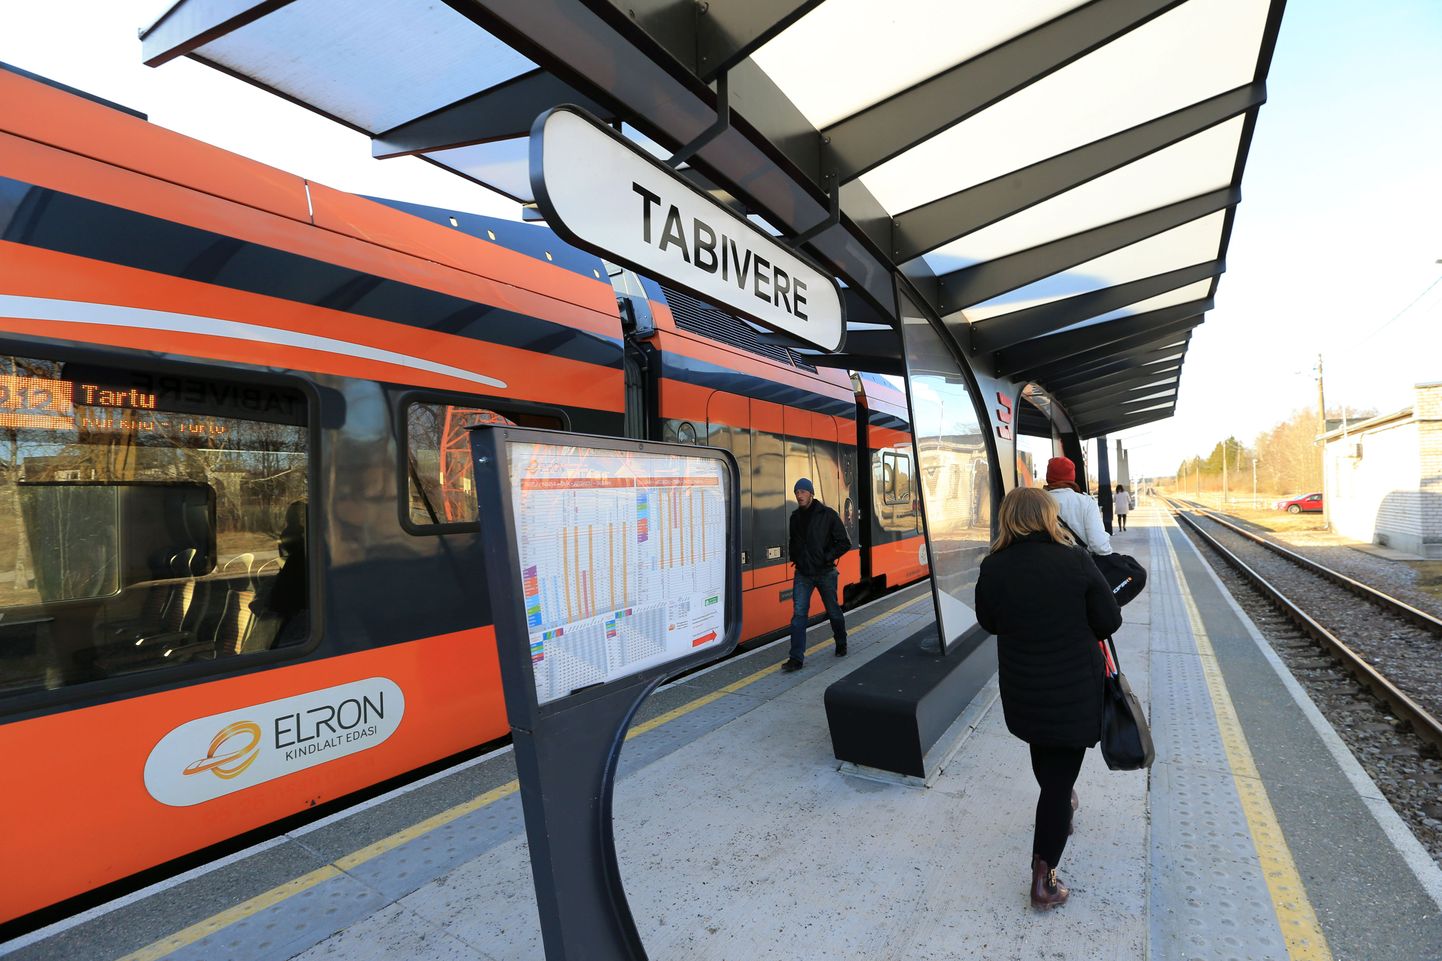 Esimene õhtune rong saabub Tallinnast Tabiverre kell 16.24 ning järgmine alles kell 19.06. Need tabiverelased, kes käivad ühissõidukiga Jõgeval tööl ning kelle tööpäev lõppeb kell viis, peavad koju sõitma bussiga või ootama ligi kaks tundi järgmist rongi.